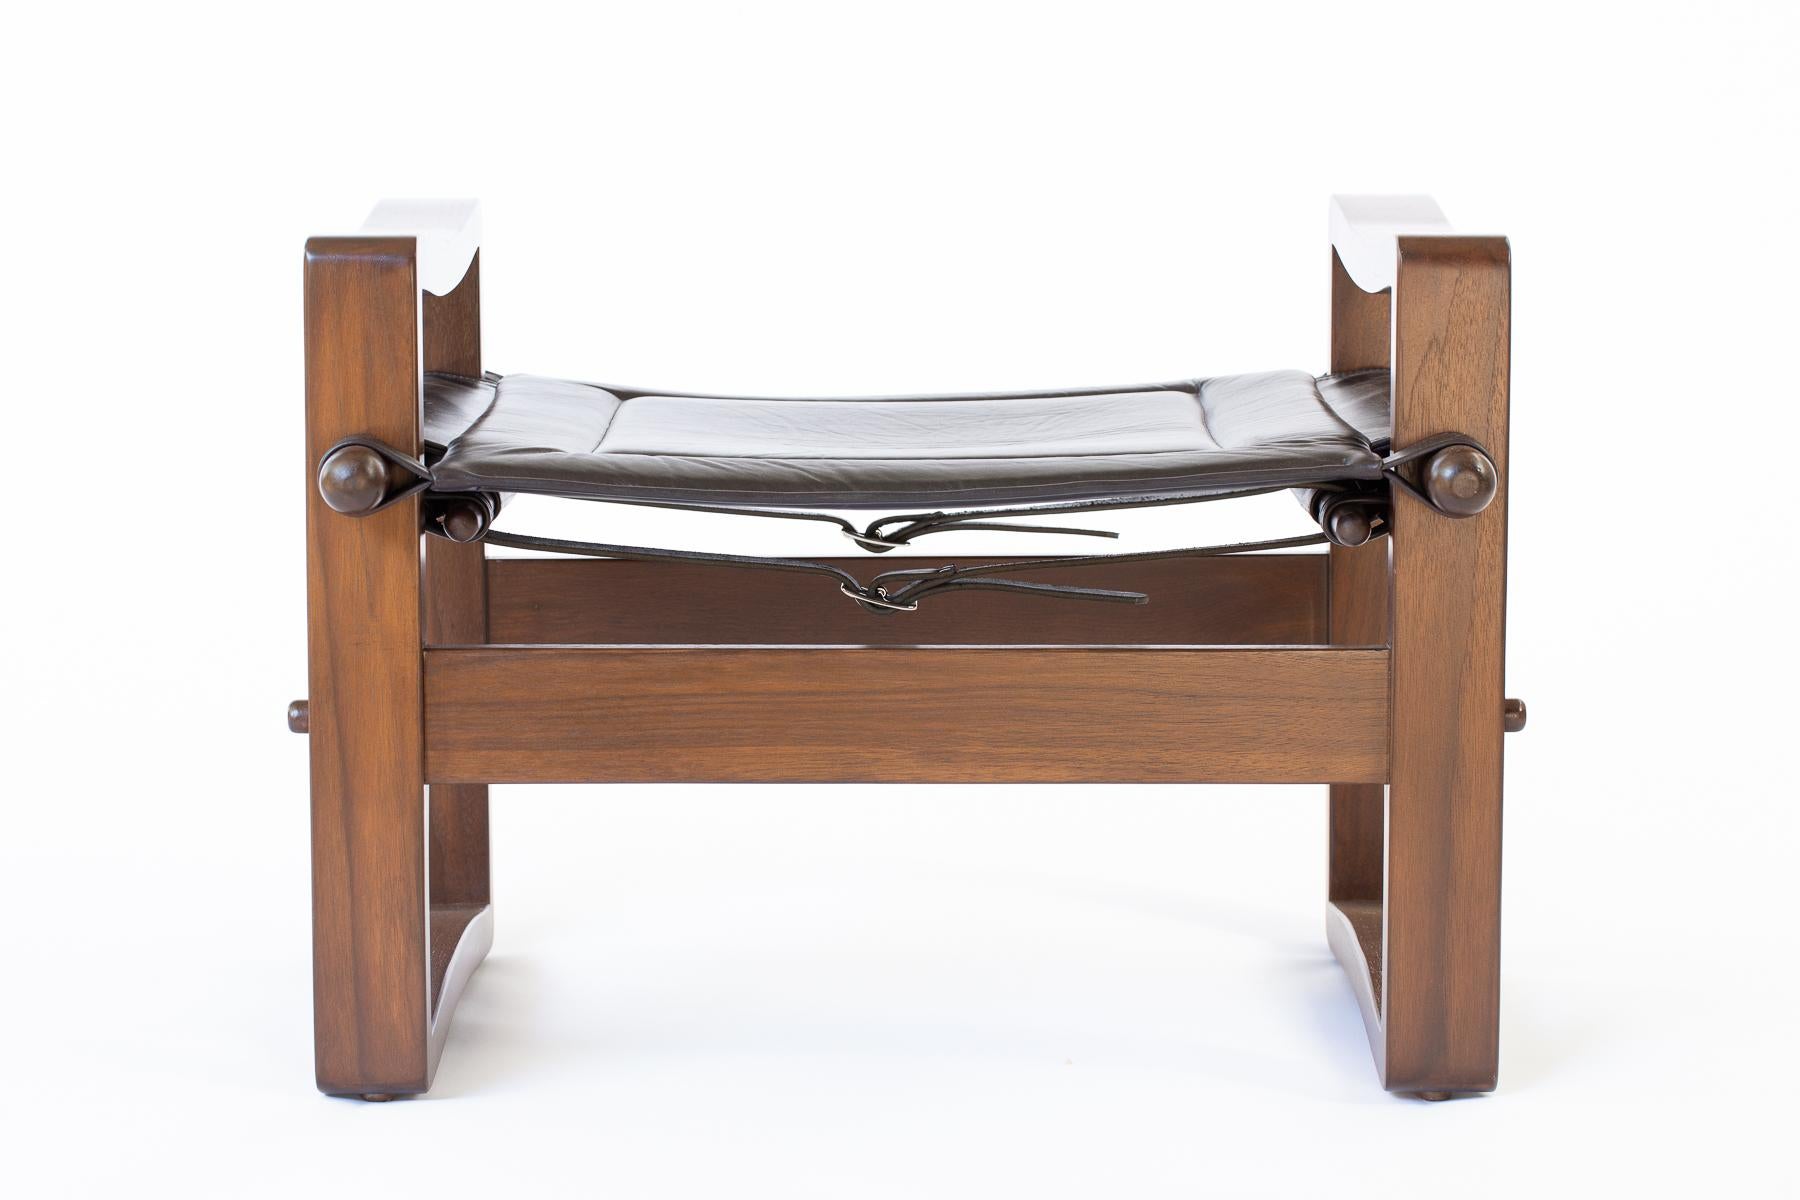 Le pouf de la campagne Safari fait référence aux meubles de style danois des années 1960 avec son cadre simple et incurvé. Rembourré d'un siège en bandoulière fixé par de solides sangles en cuir, le pouf est méticuleusement construit avec une